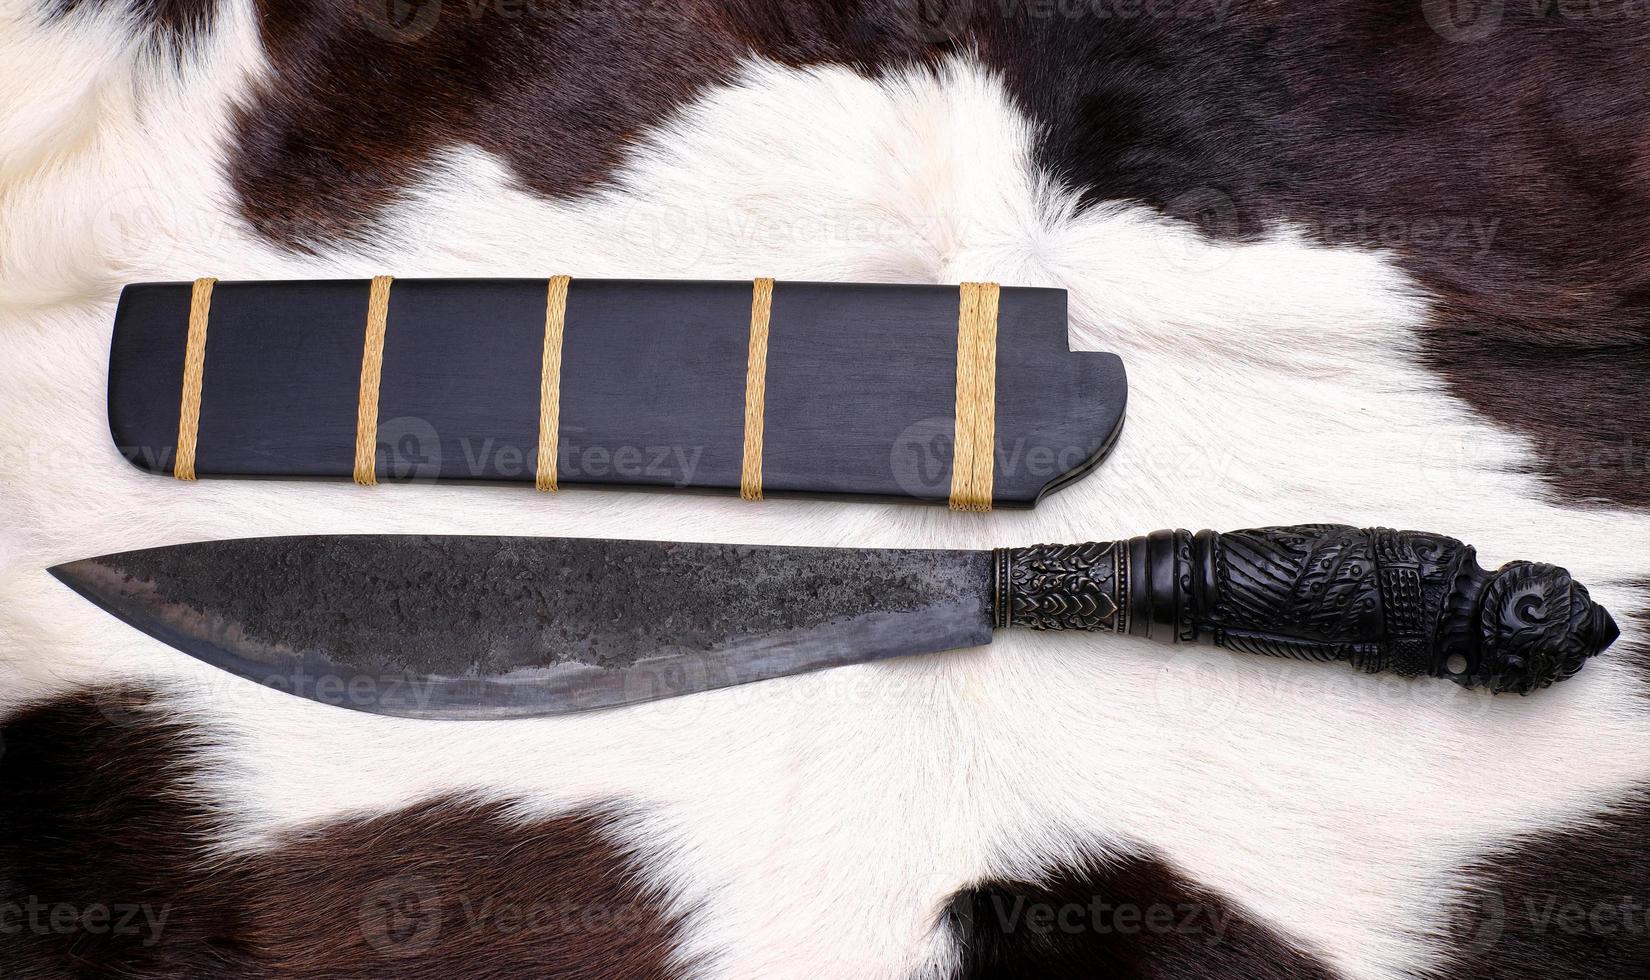 amulet mes van inheems Thailand mes met ebbehout hout schede is handgemaakt in Thailand voor bescherming gelukkig foto